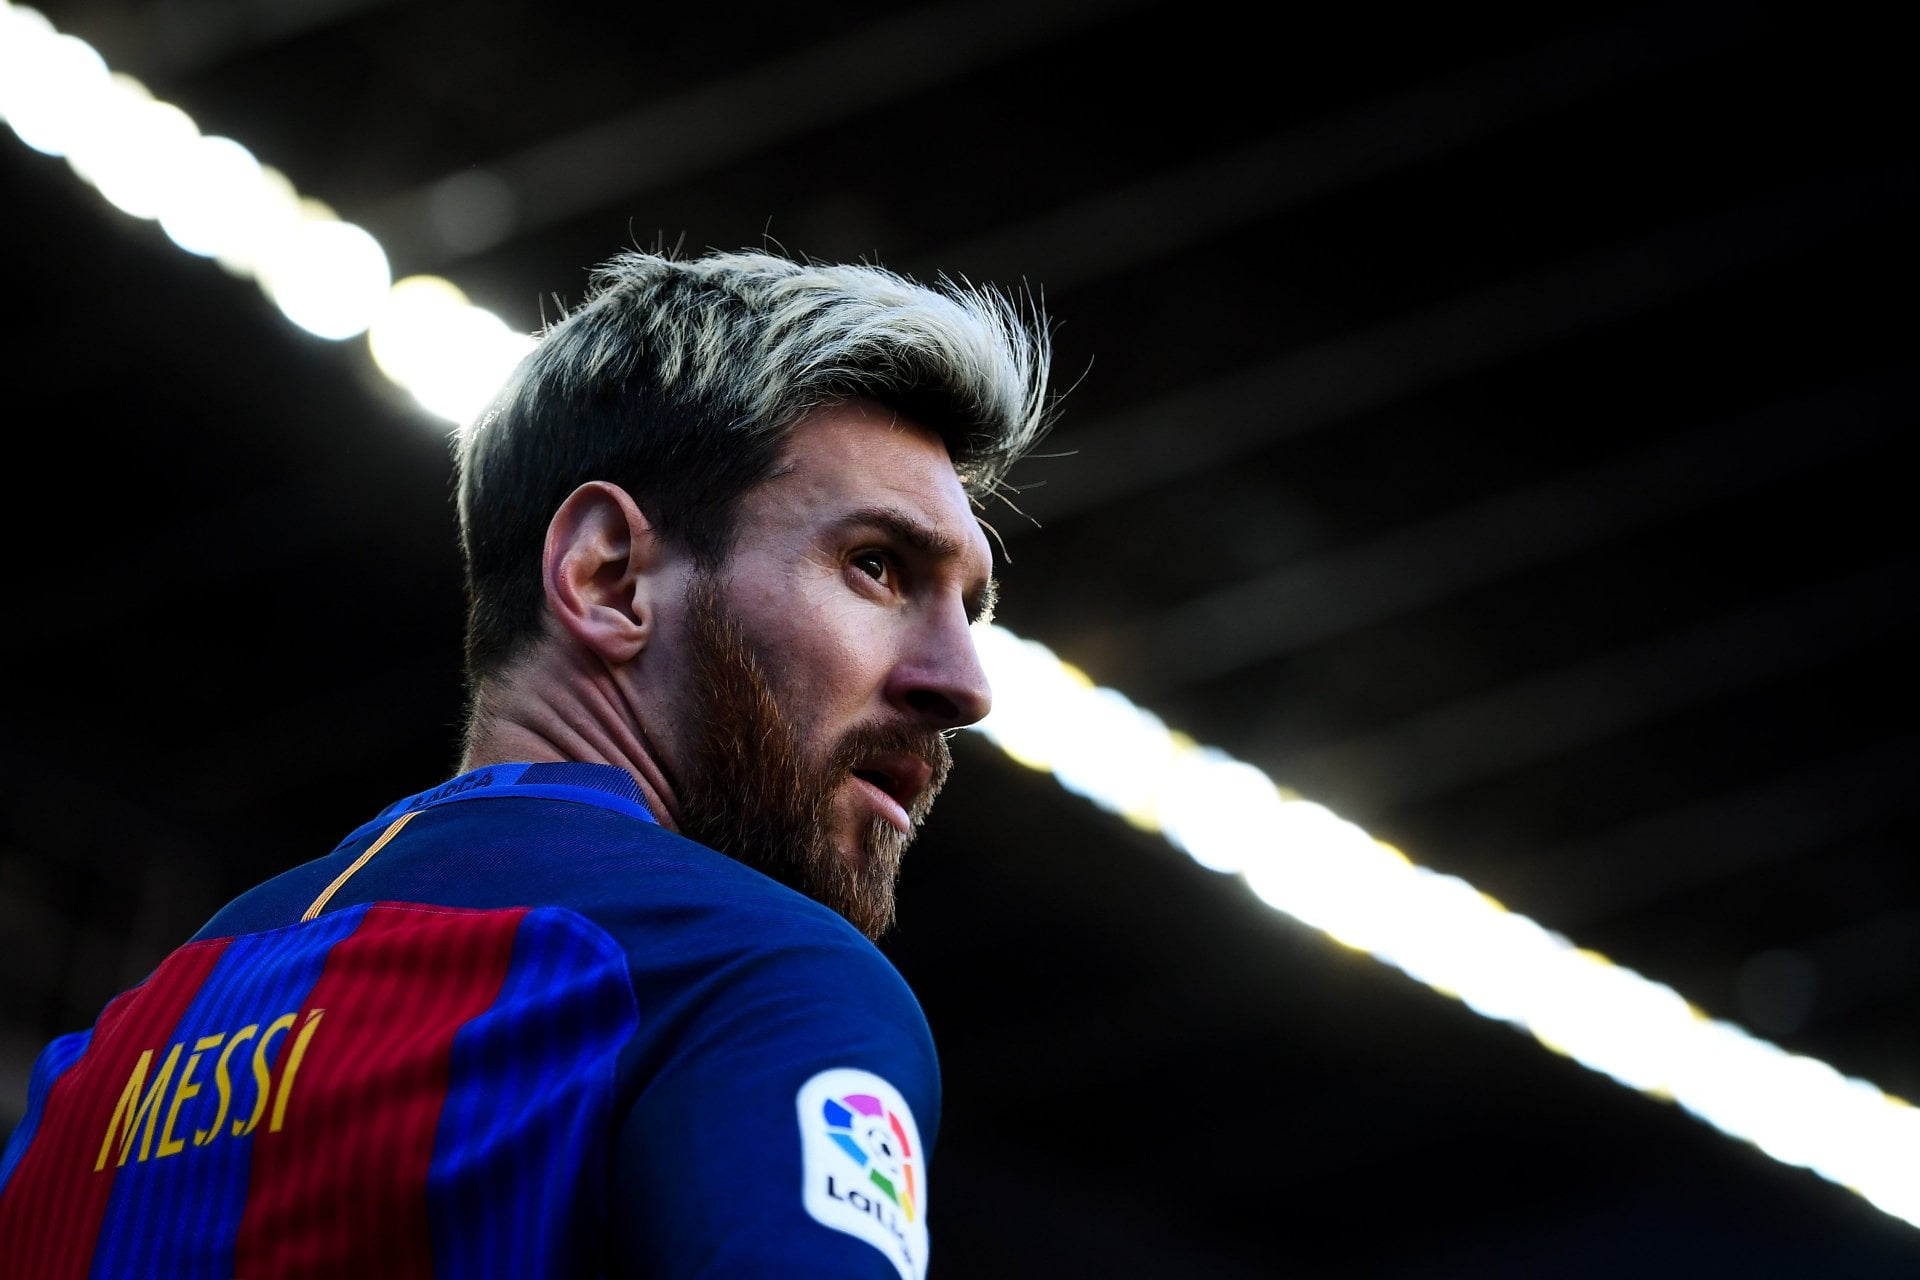 190 Hình Nền Messi Đẹp Đỉnh ĐẲNG CẤP Chất Thôi Rồi Luôn